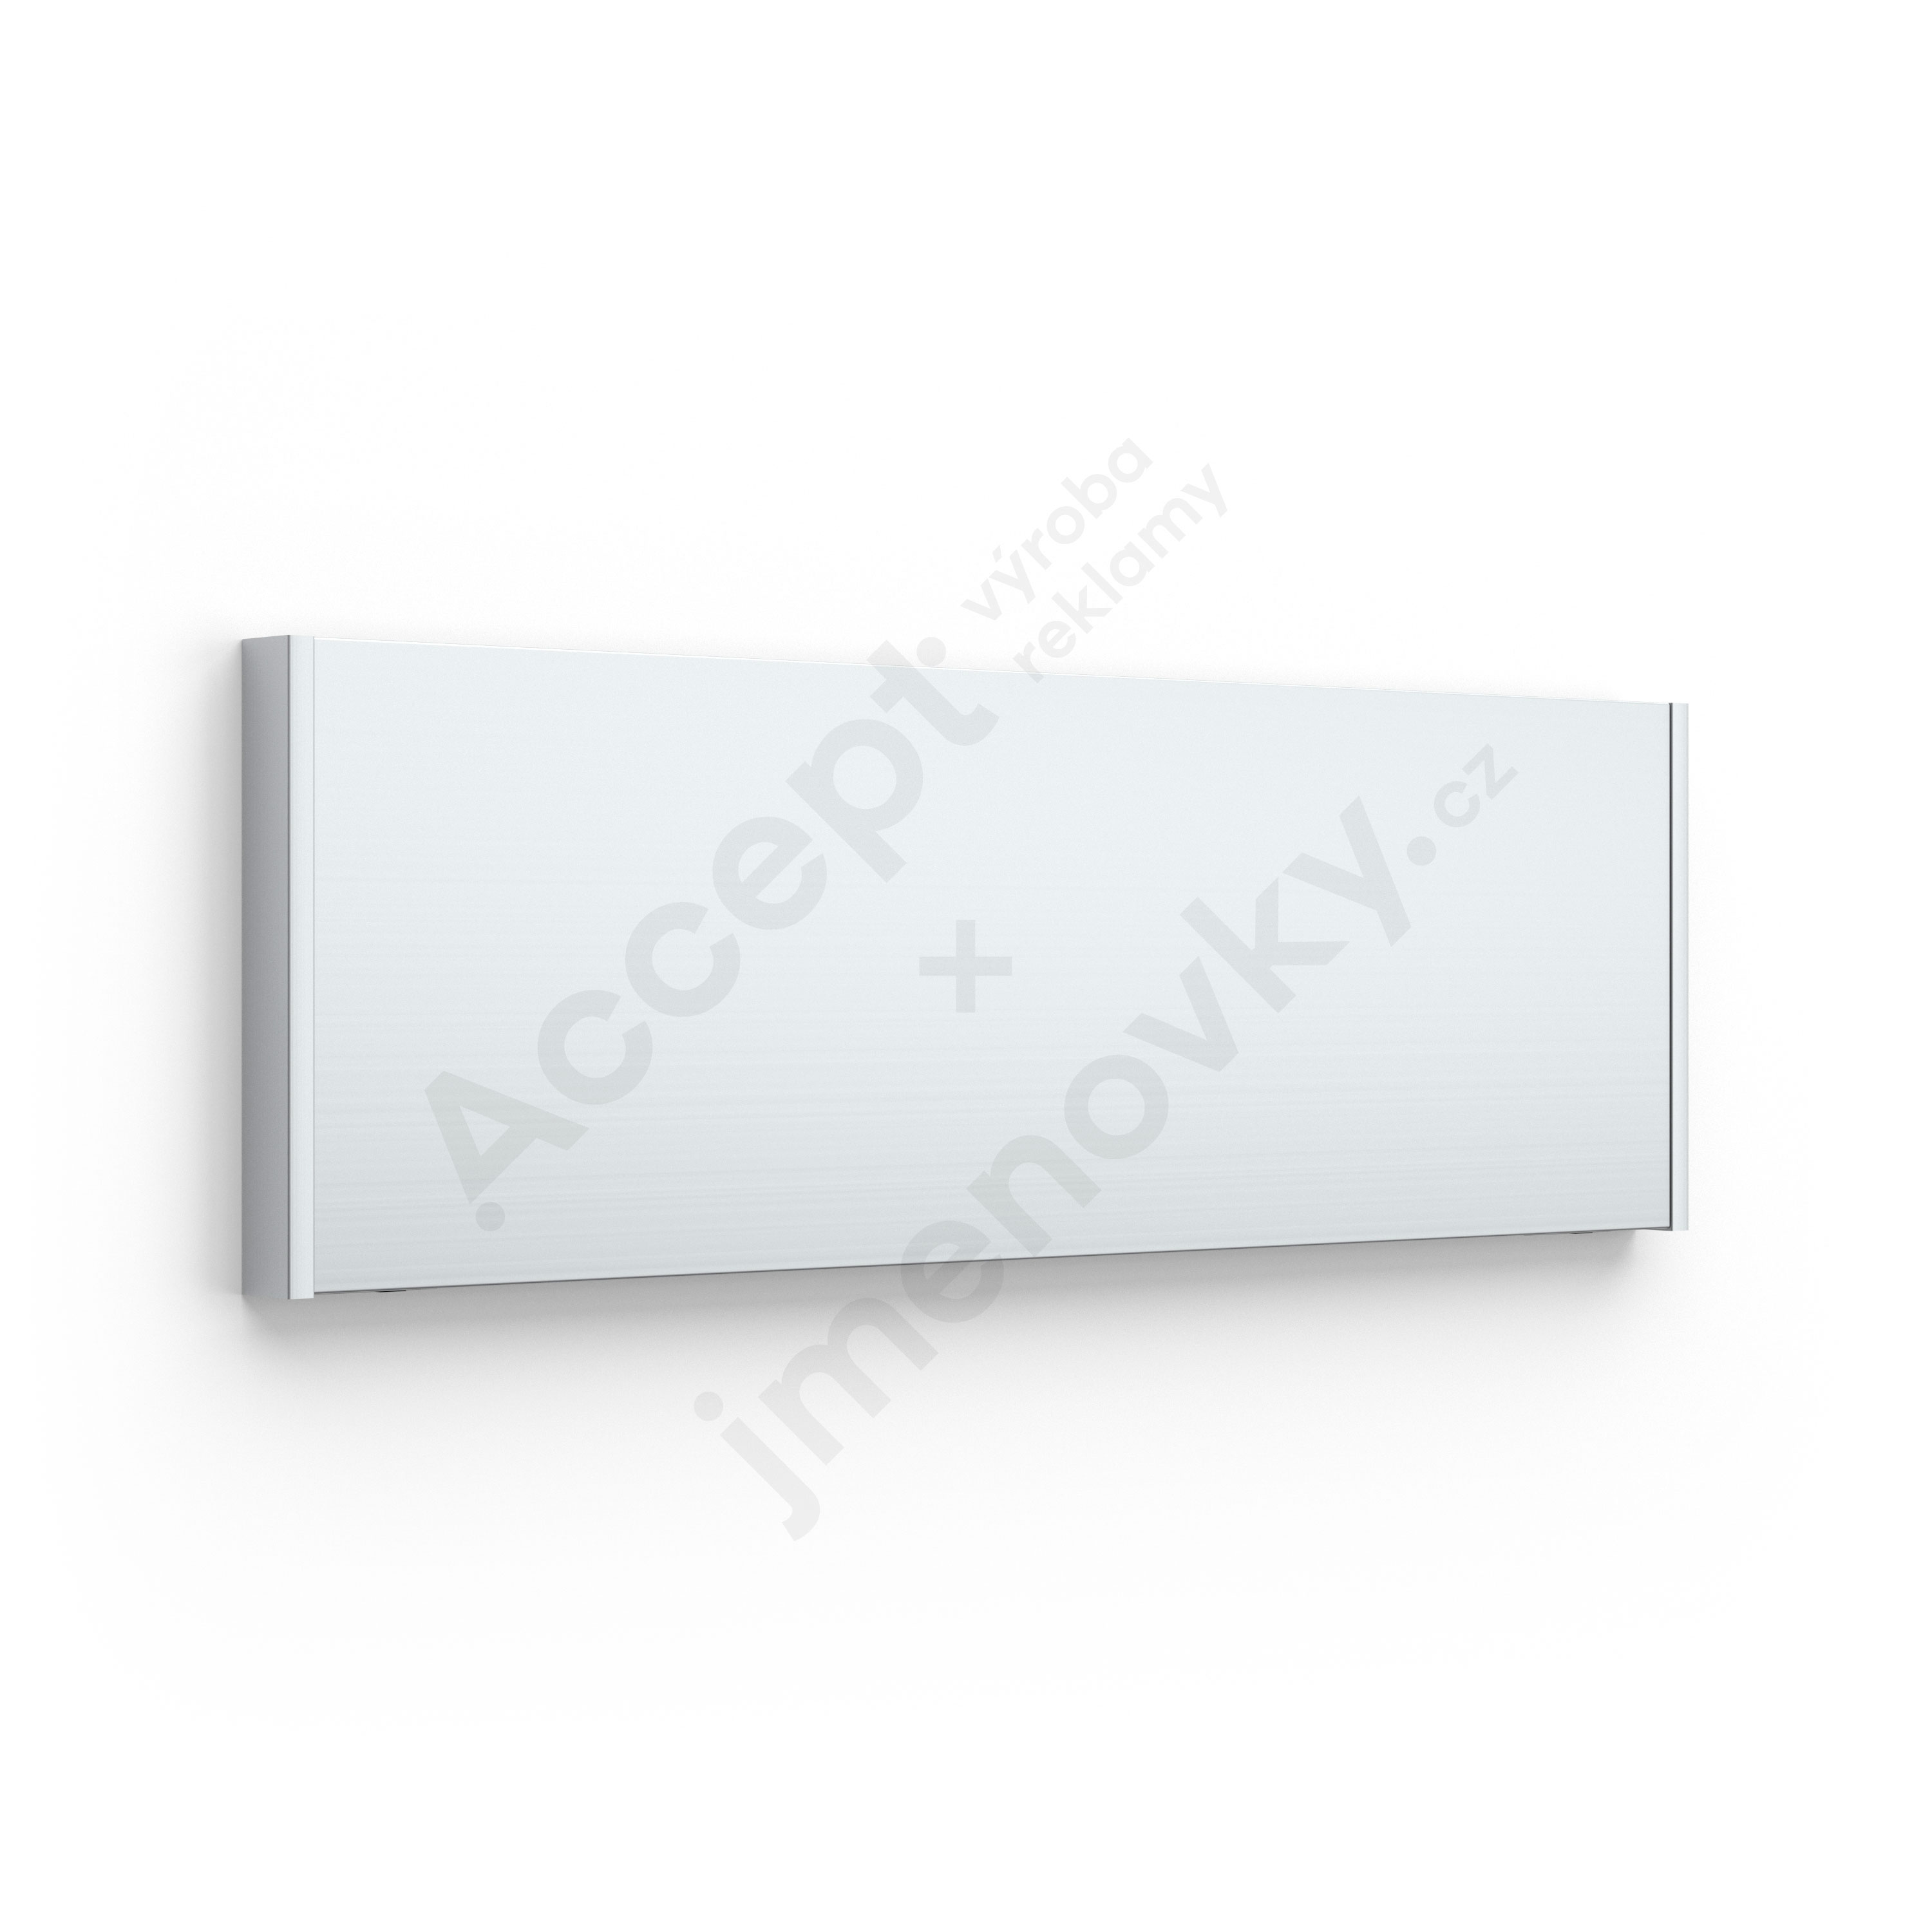 Dveřní tabulka SlimSlatz (nezásuvný systém, rovné bočnice, 187 × 62 mm)